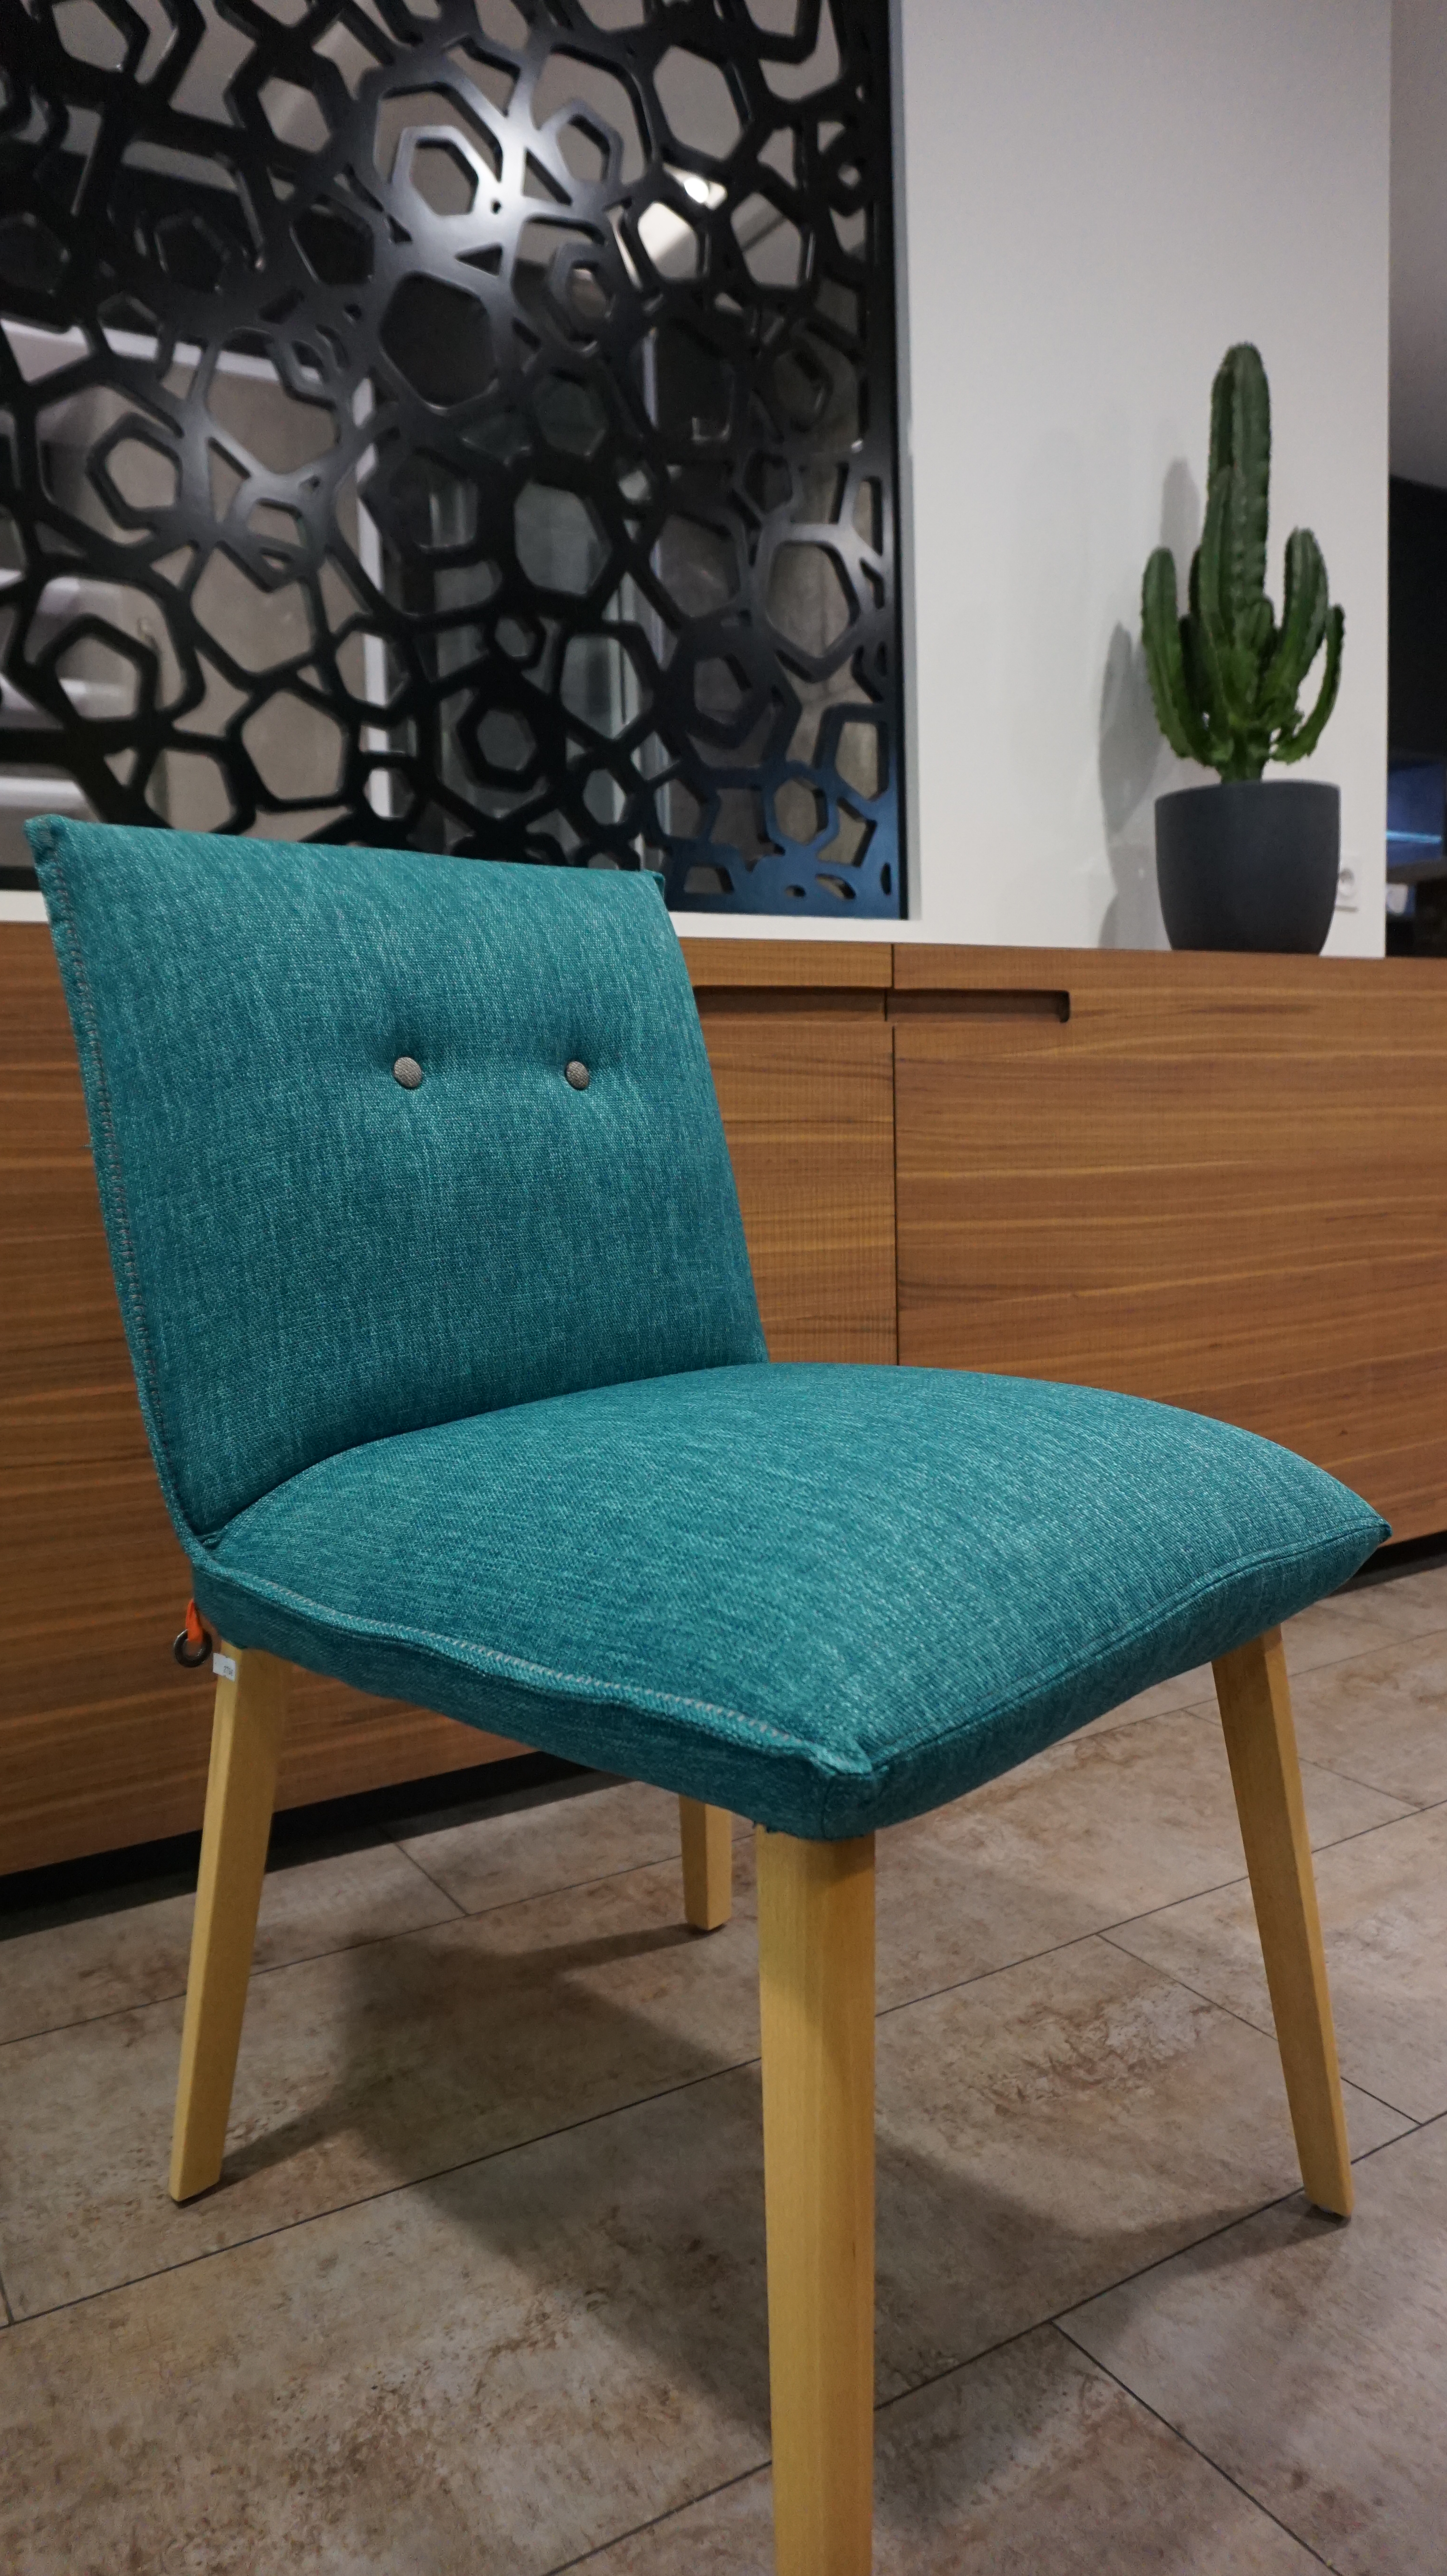 Chaise ultra confortable; textile et coloris sur mesure